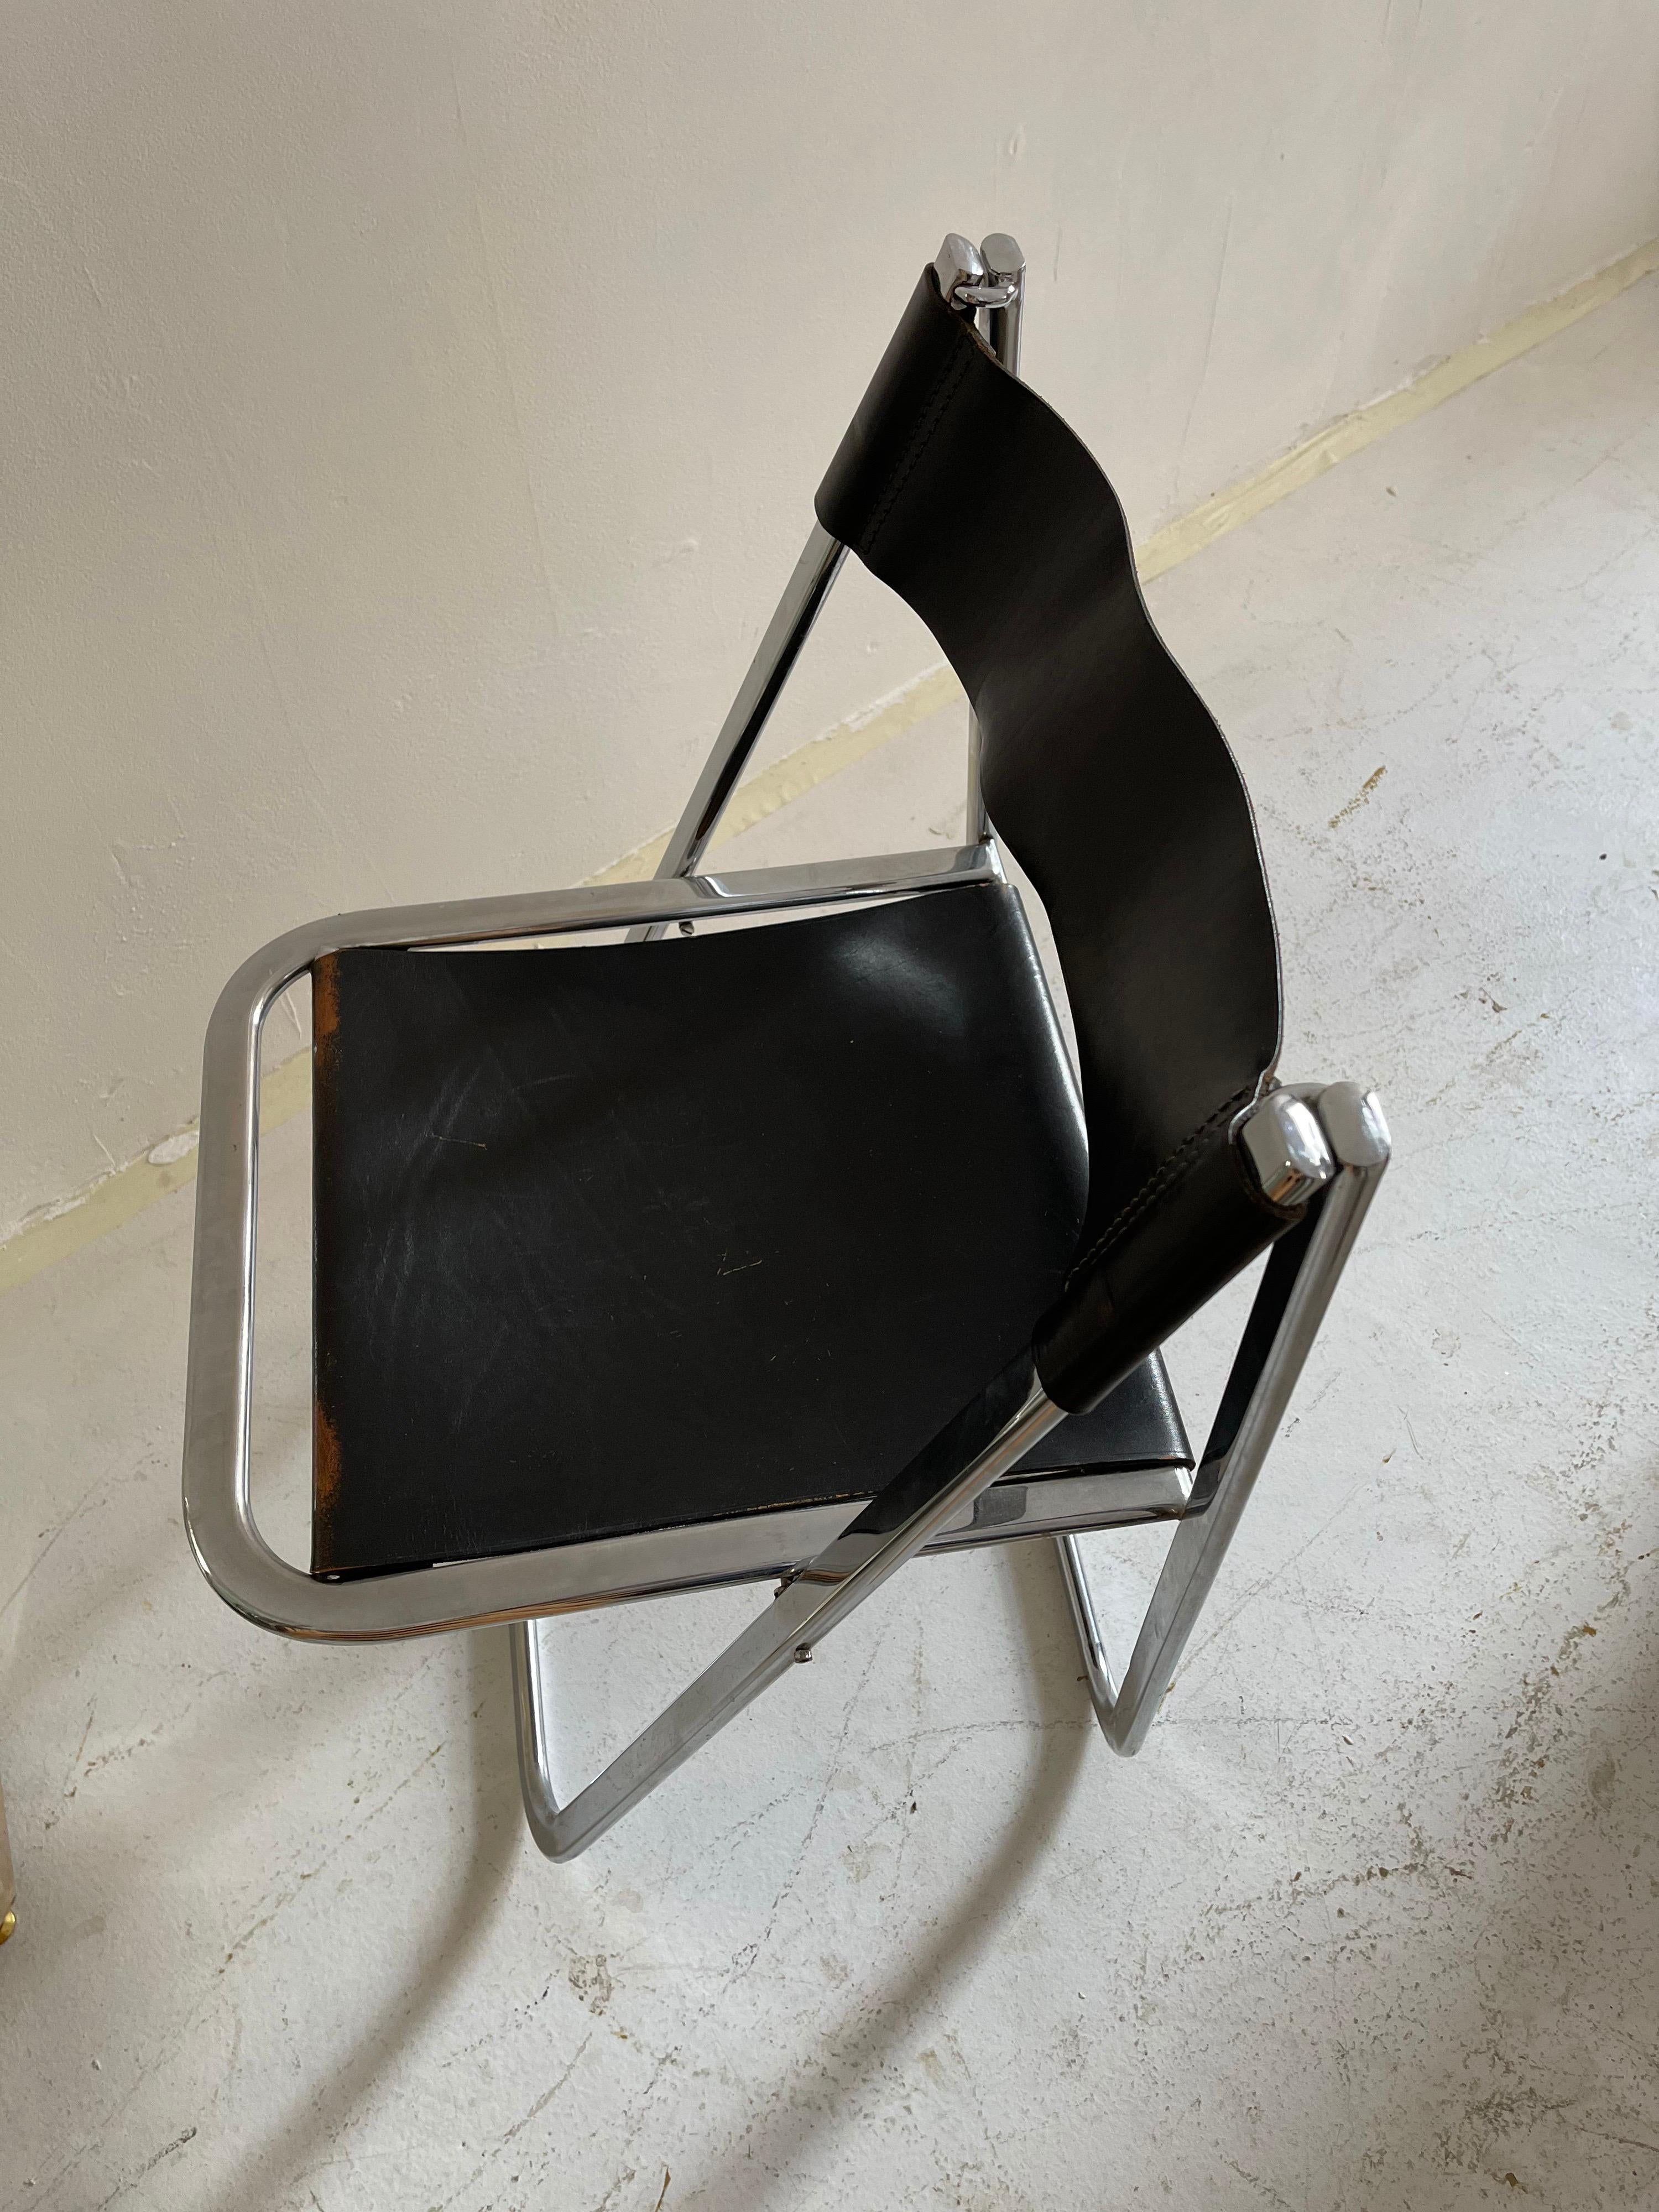 Italian Folding Chrome Chair, Italy, 1970s For Sale 1